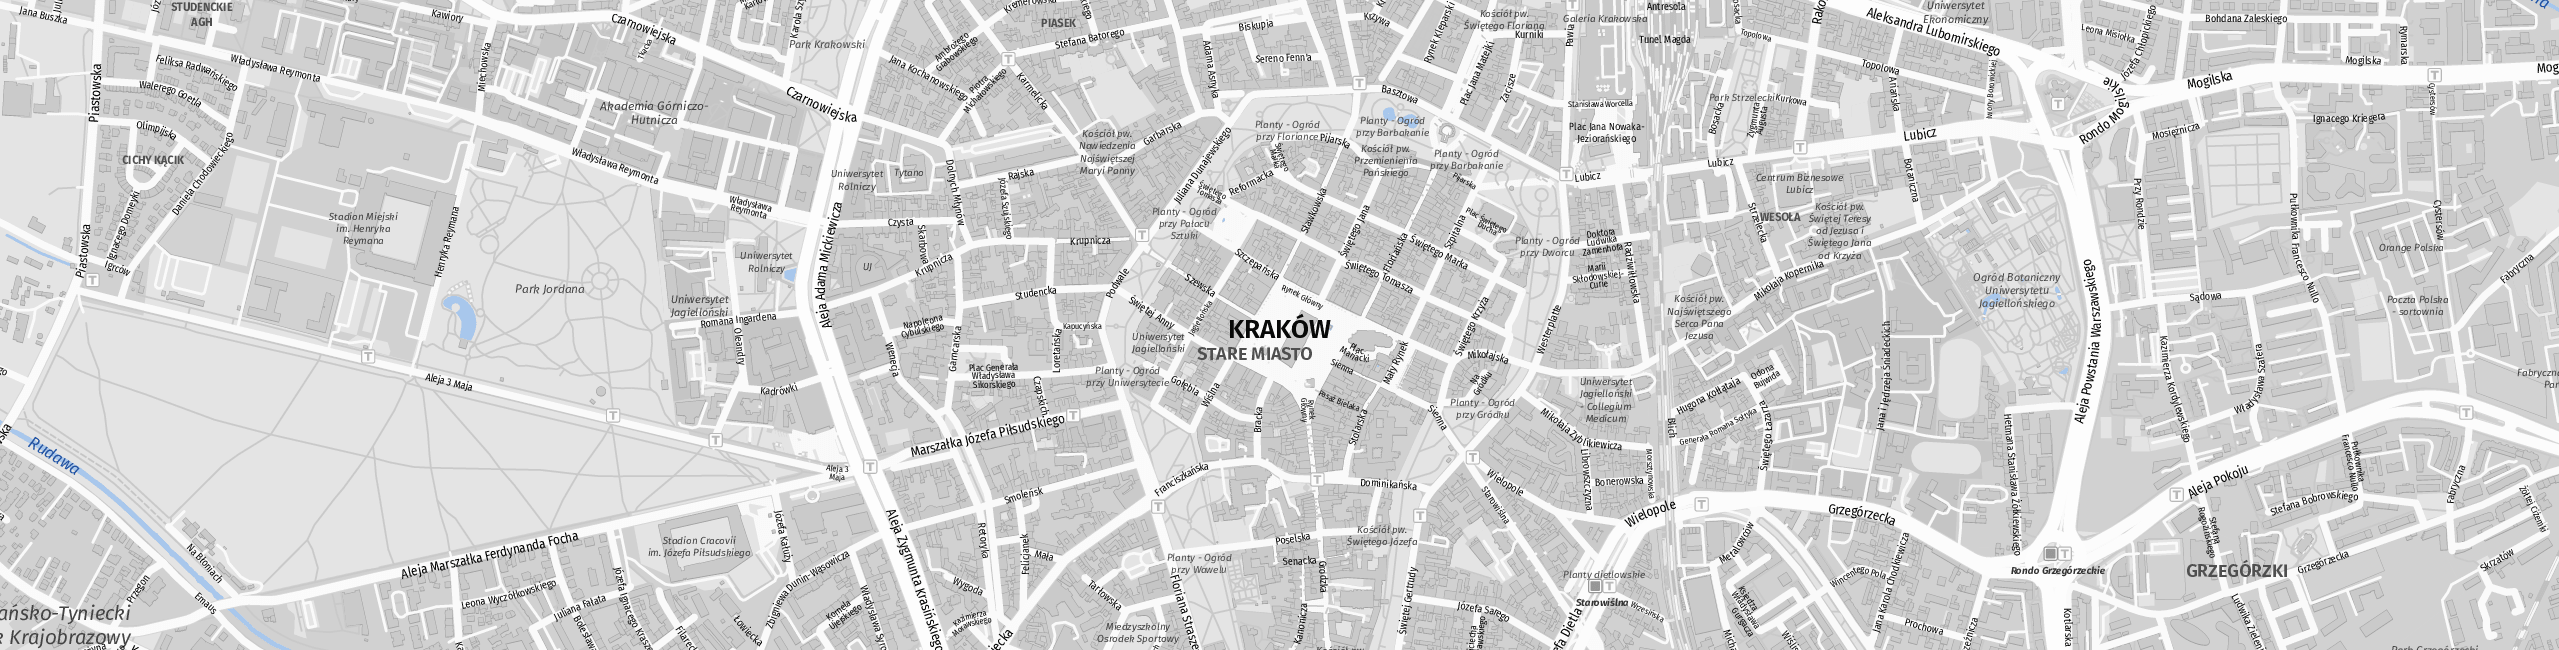 Stadtplan Krakow zum Downloaden.